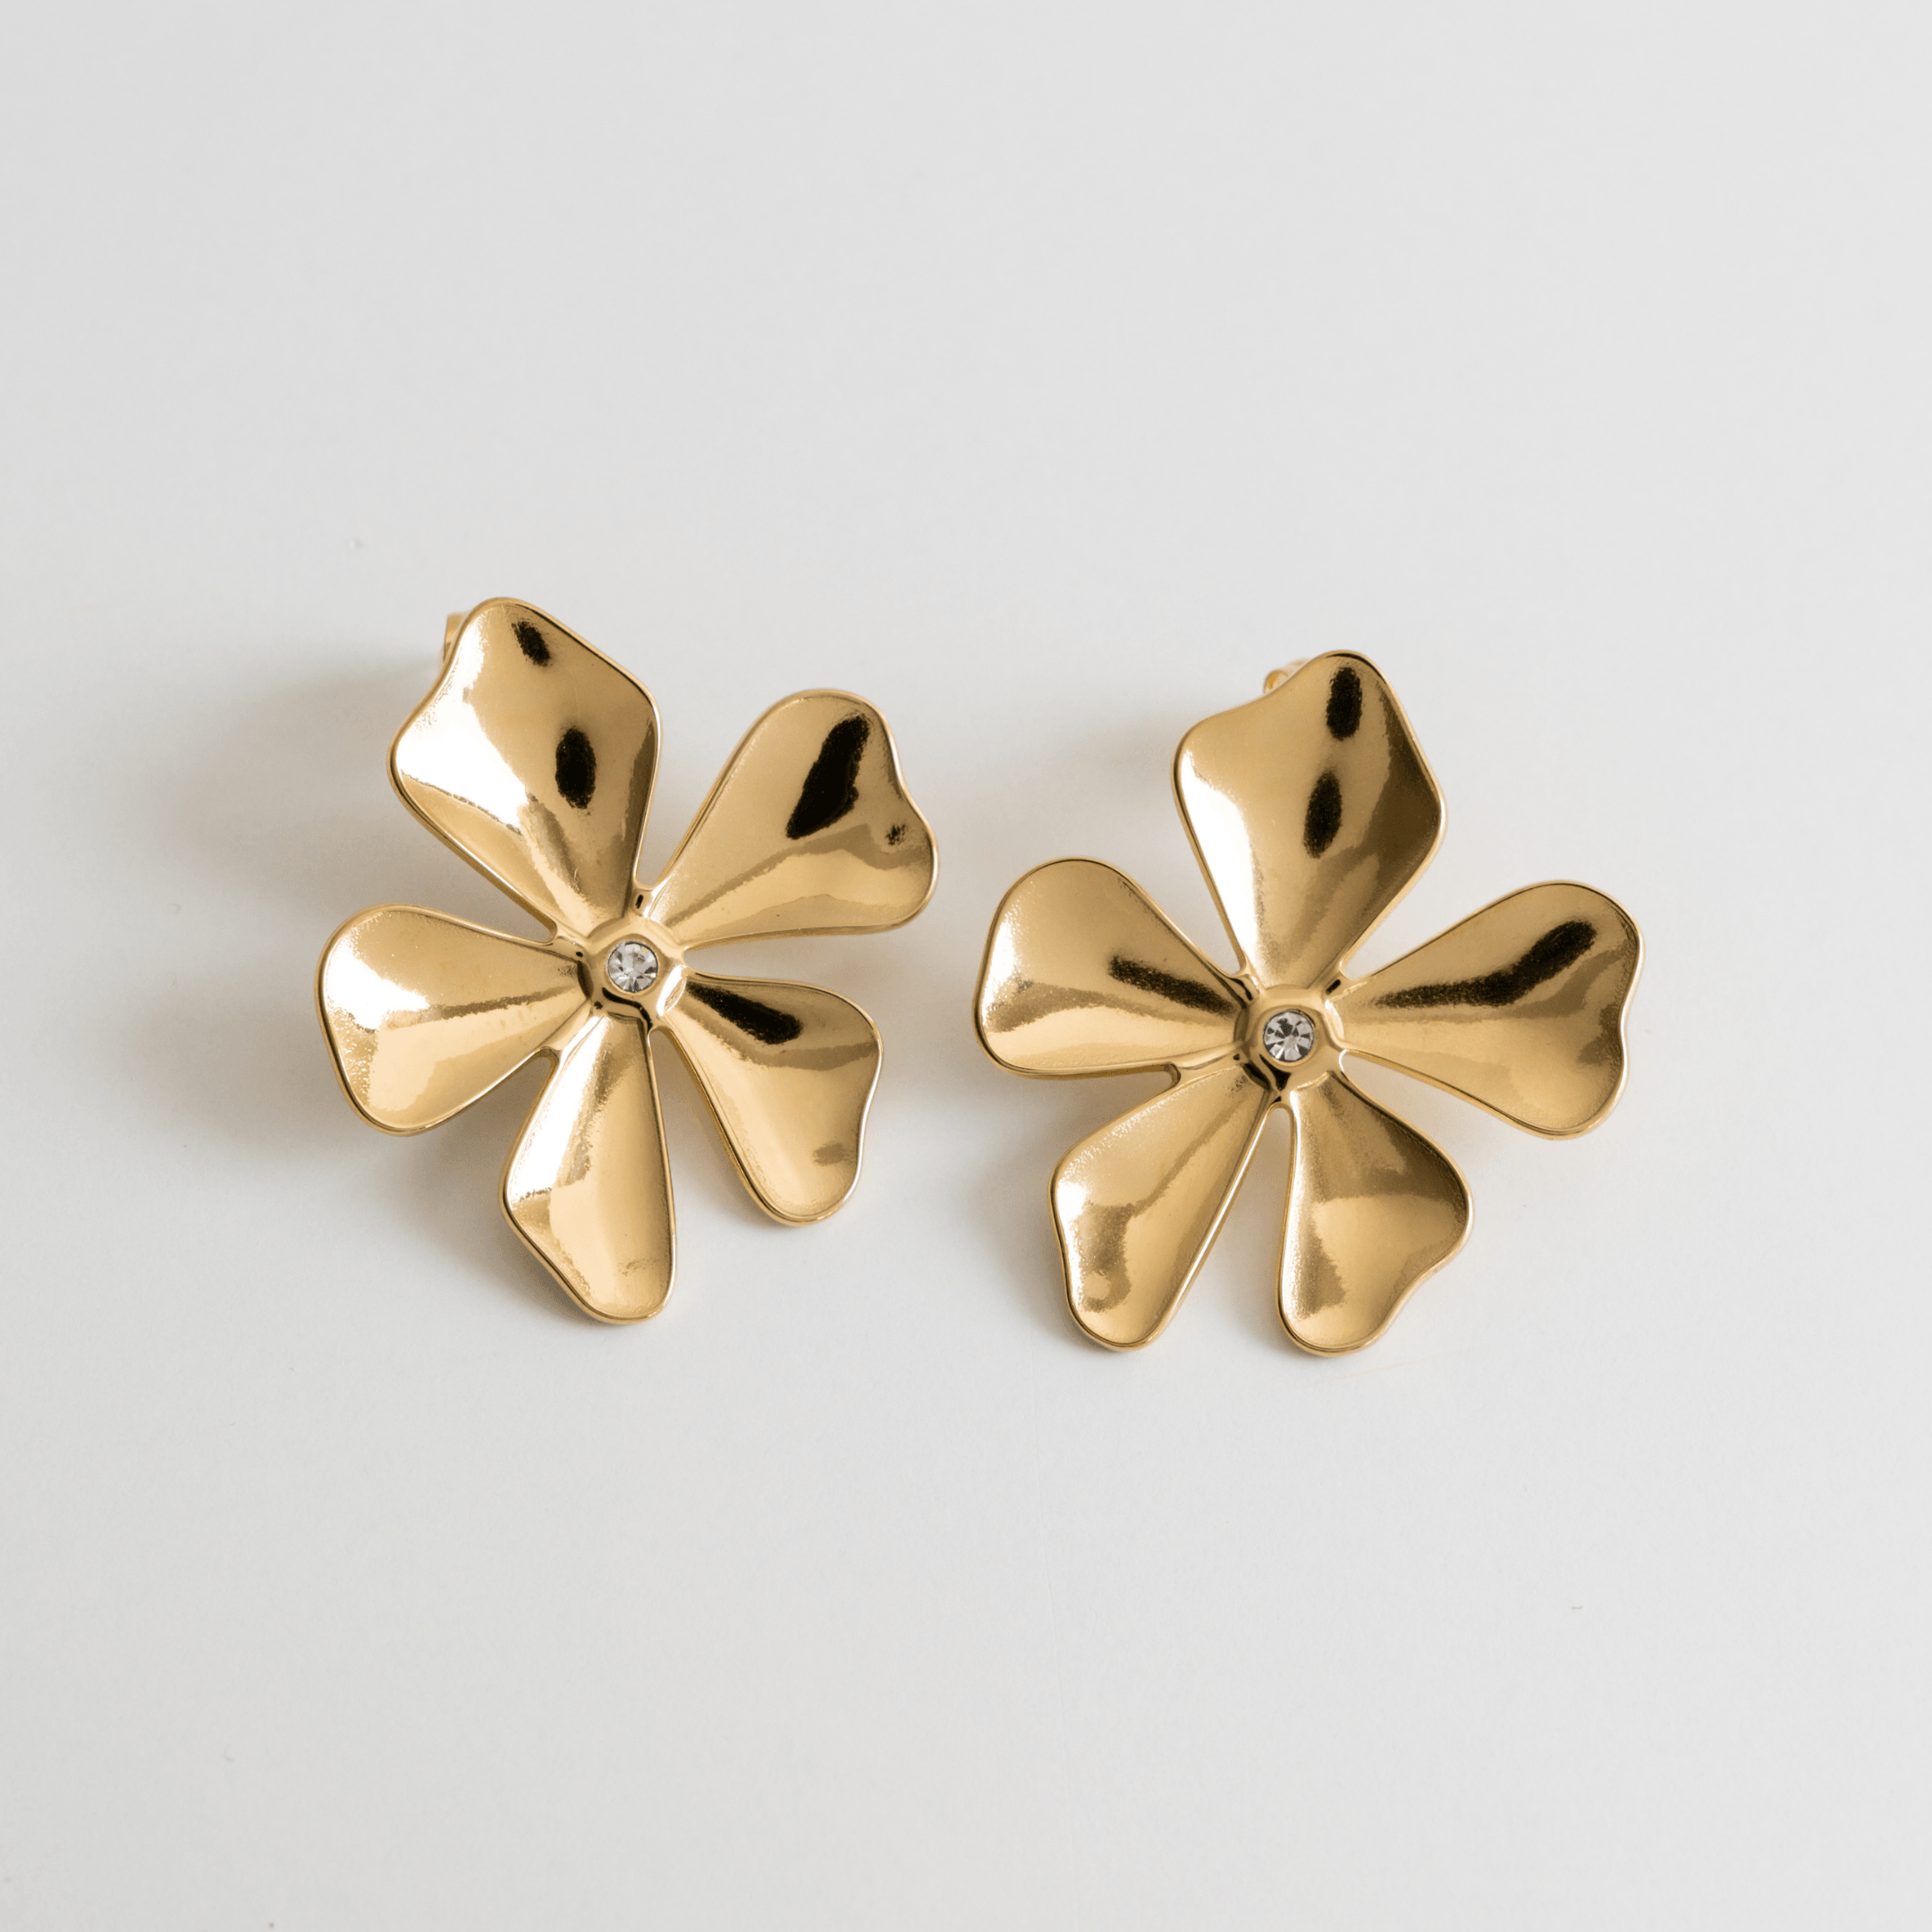 Melati Flower Earrings - Drop Earrings, flower, gemstone, Gold, statement, statement earrings - La Musa Jewellery